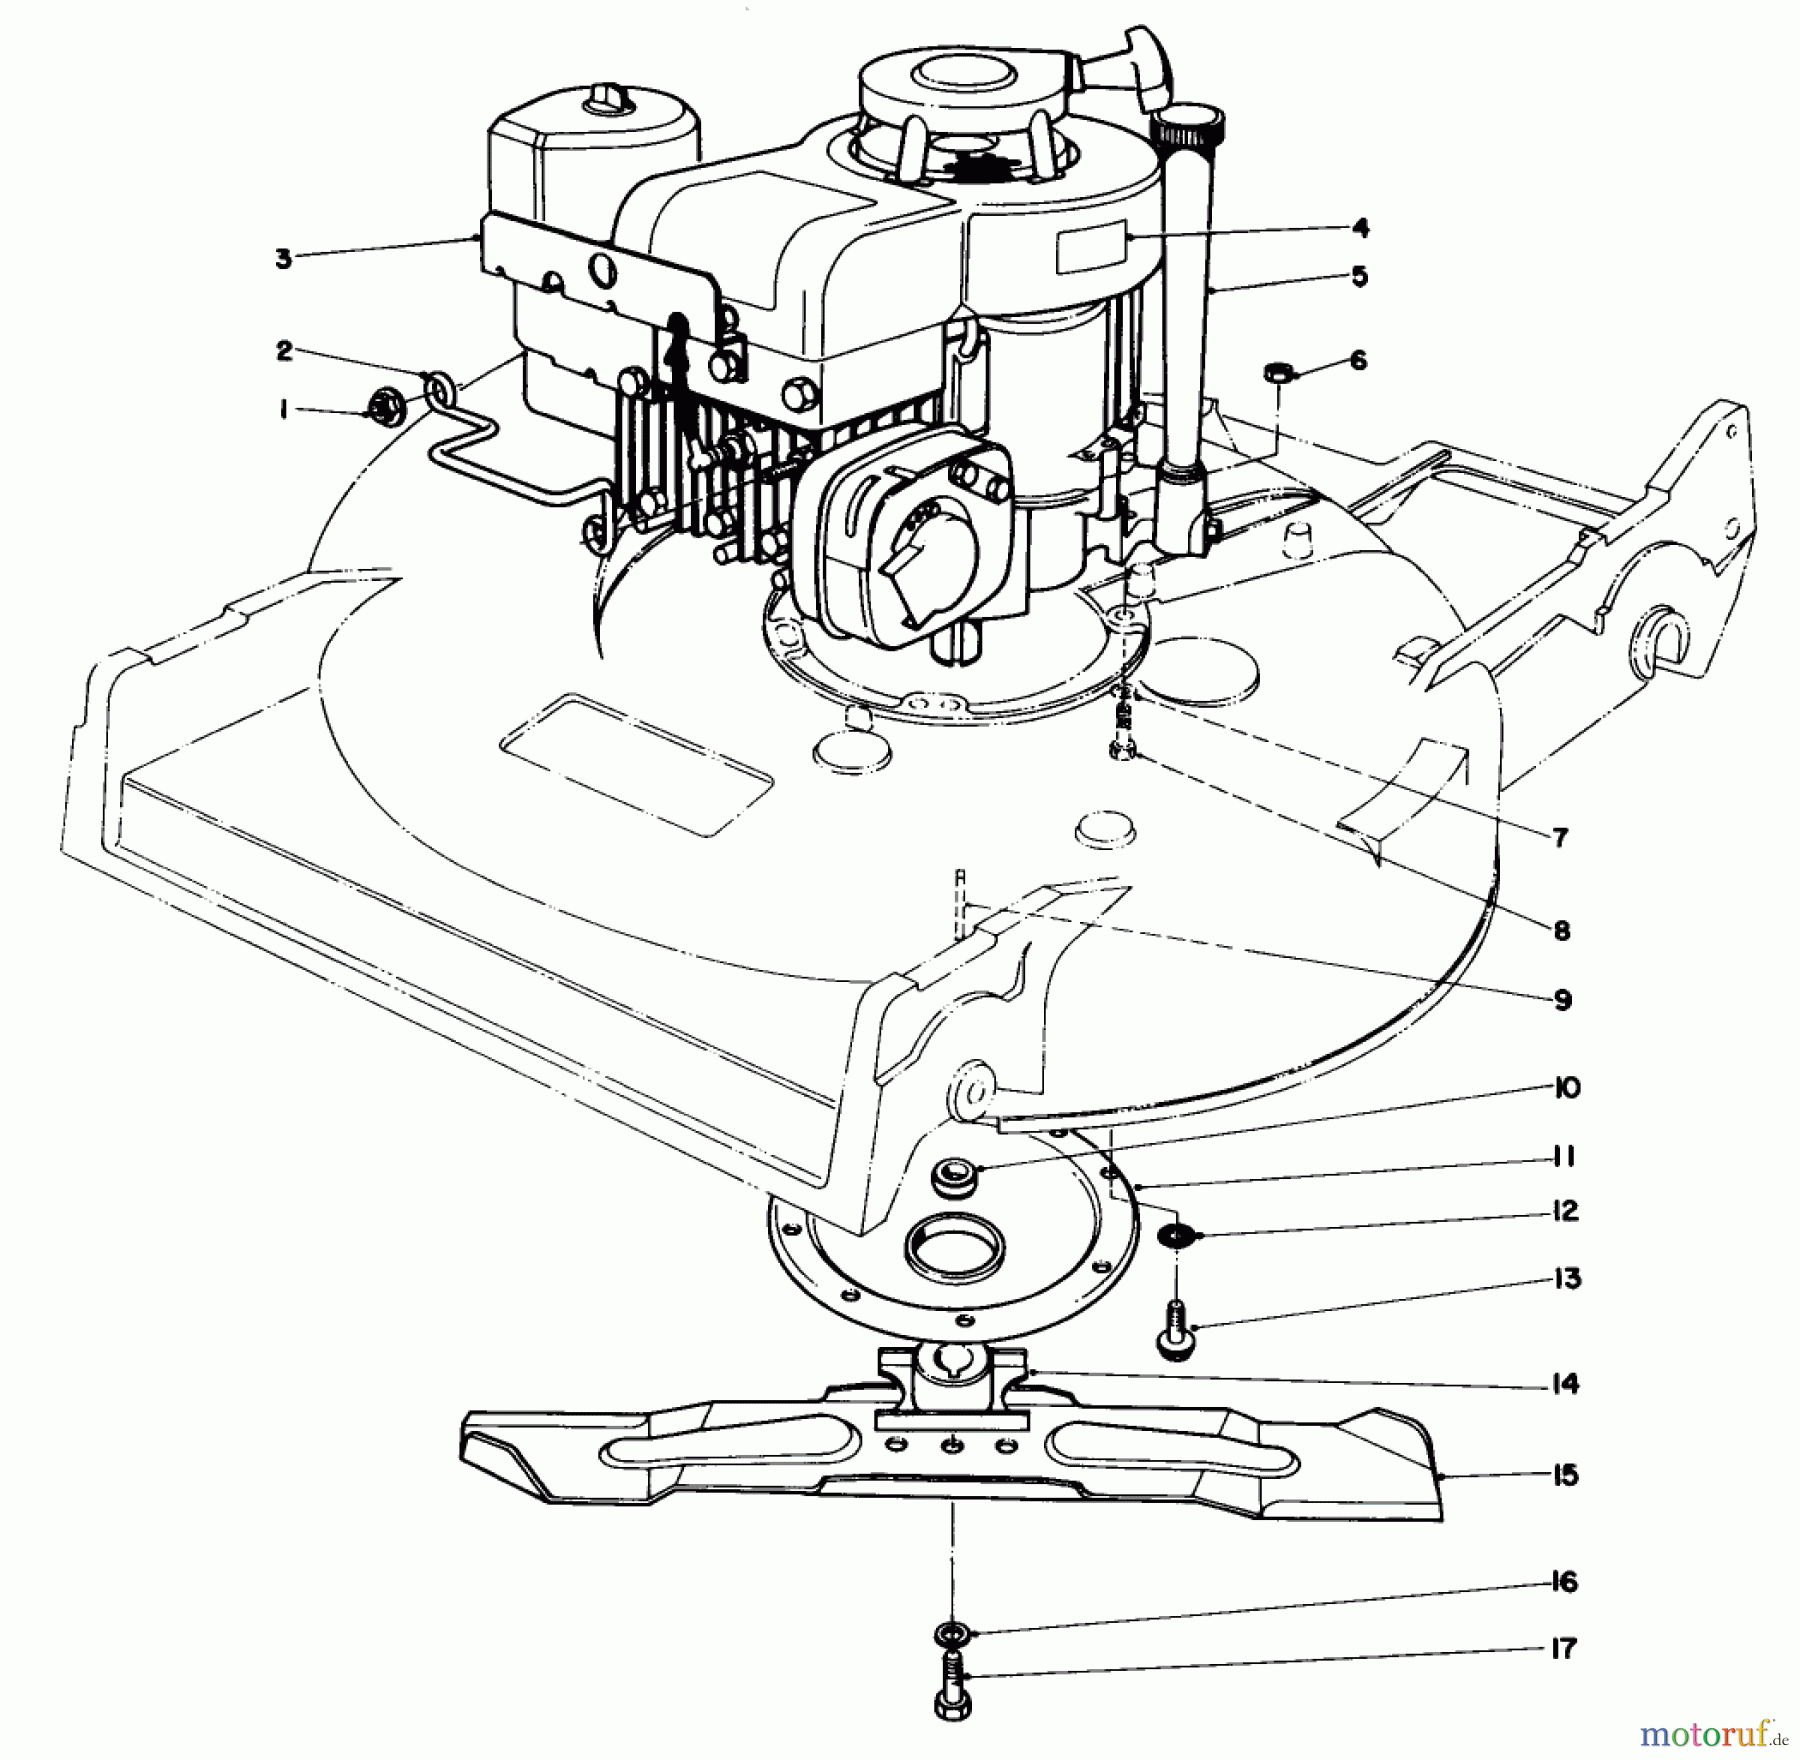  Toro Neu Mowers, Walk-Behind Seite 2 22015 - Toro Lawnmower, 1984 (4000001-4999999) ENGINE ASSEMBLY (MODEL 22015)